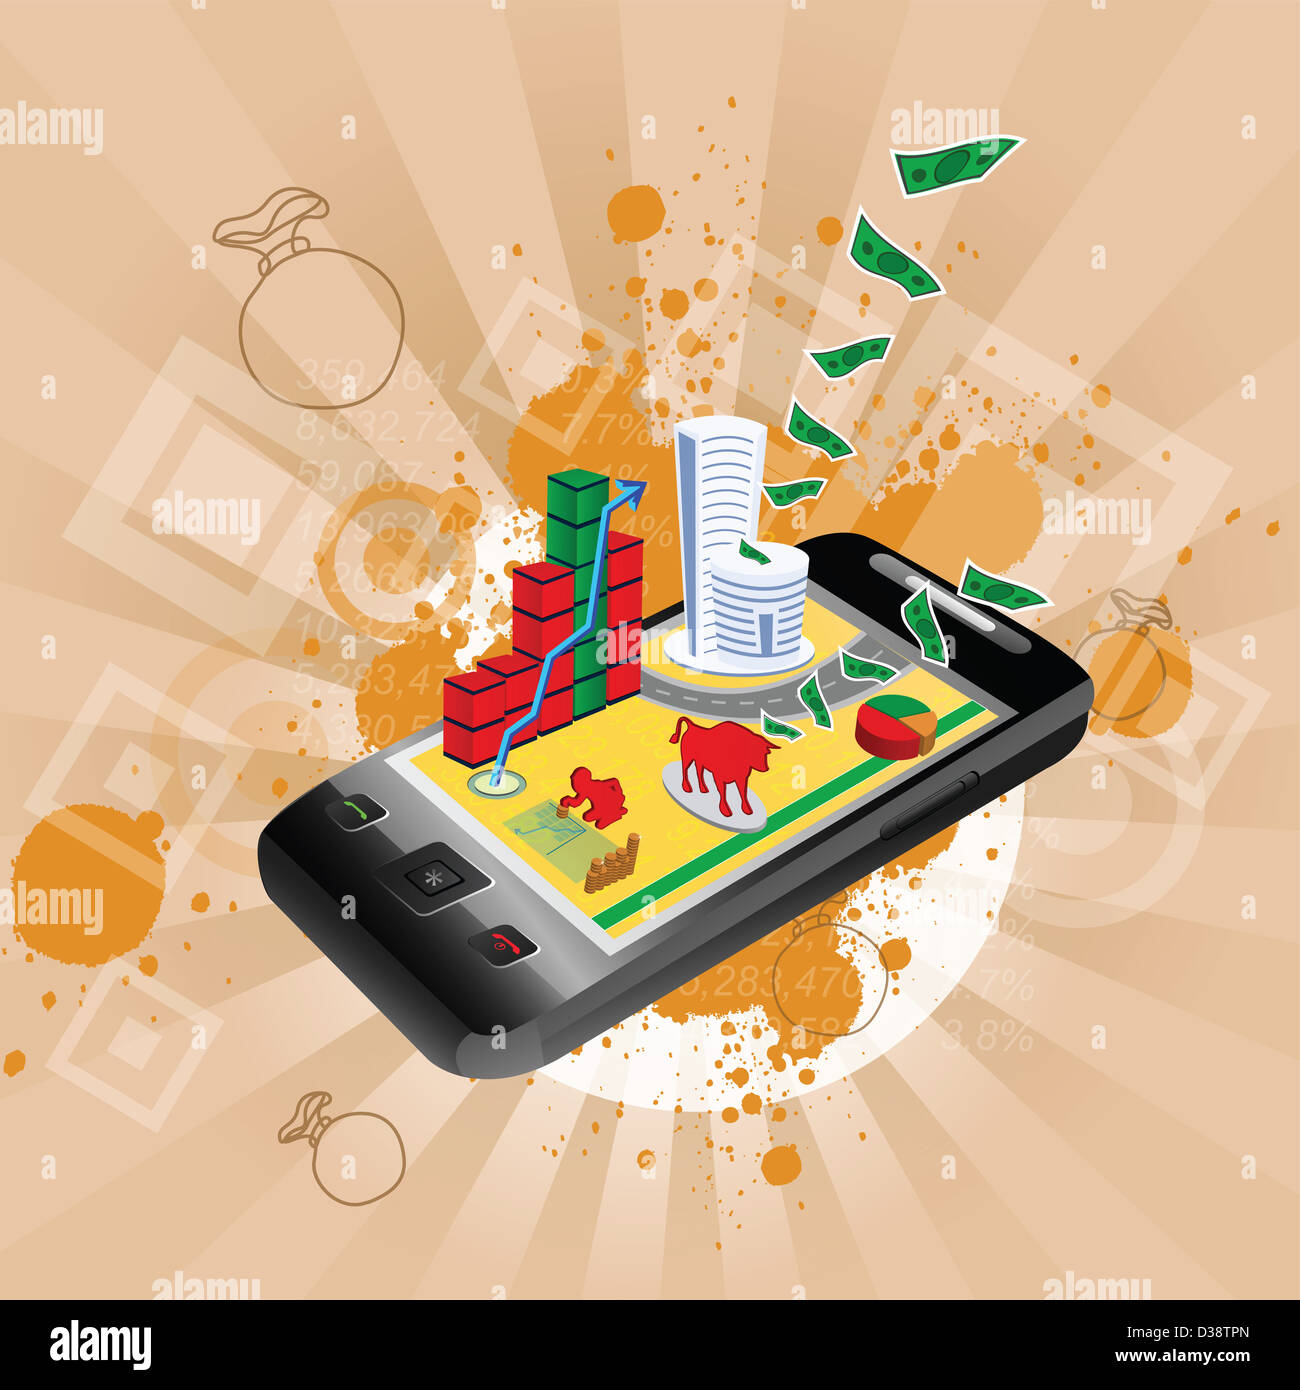 Représentation d'illustration montrant l'utilisation d'un téléphone mobile en stock trading Banque D'Images